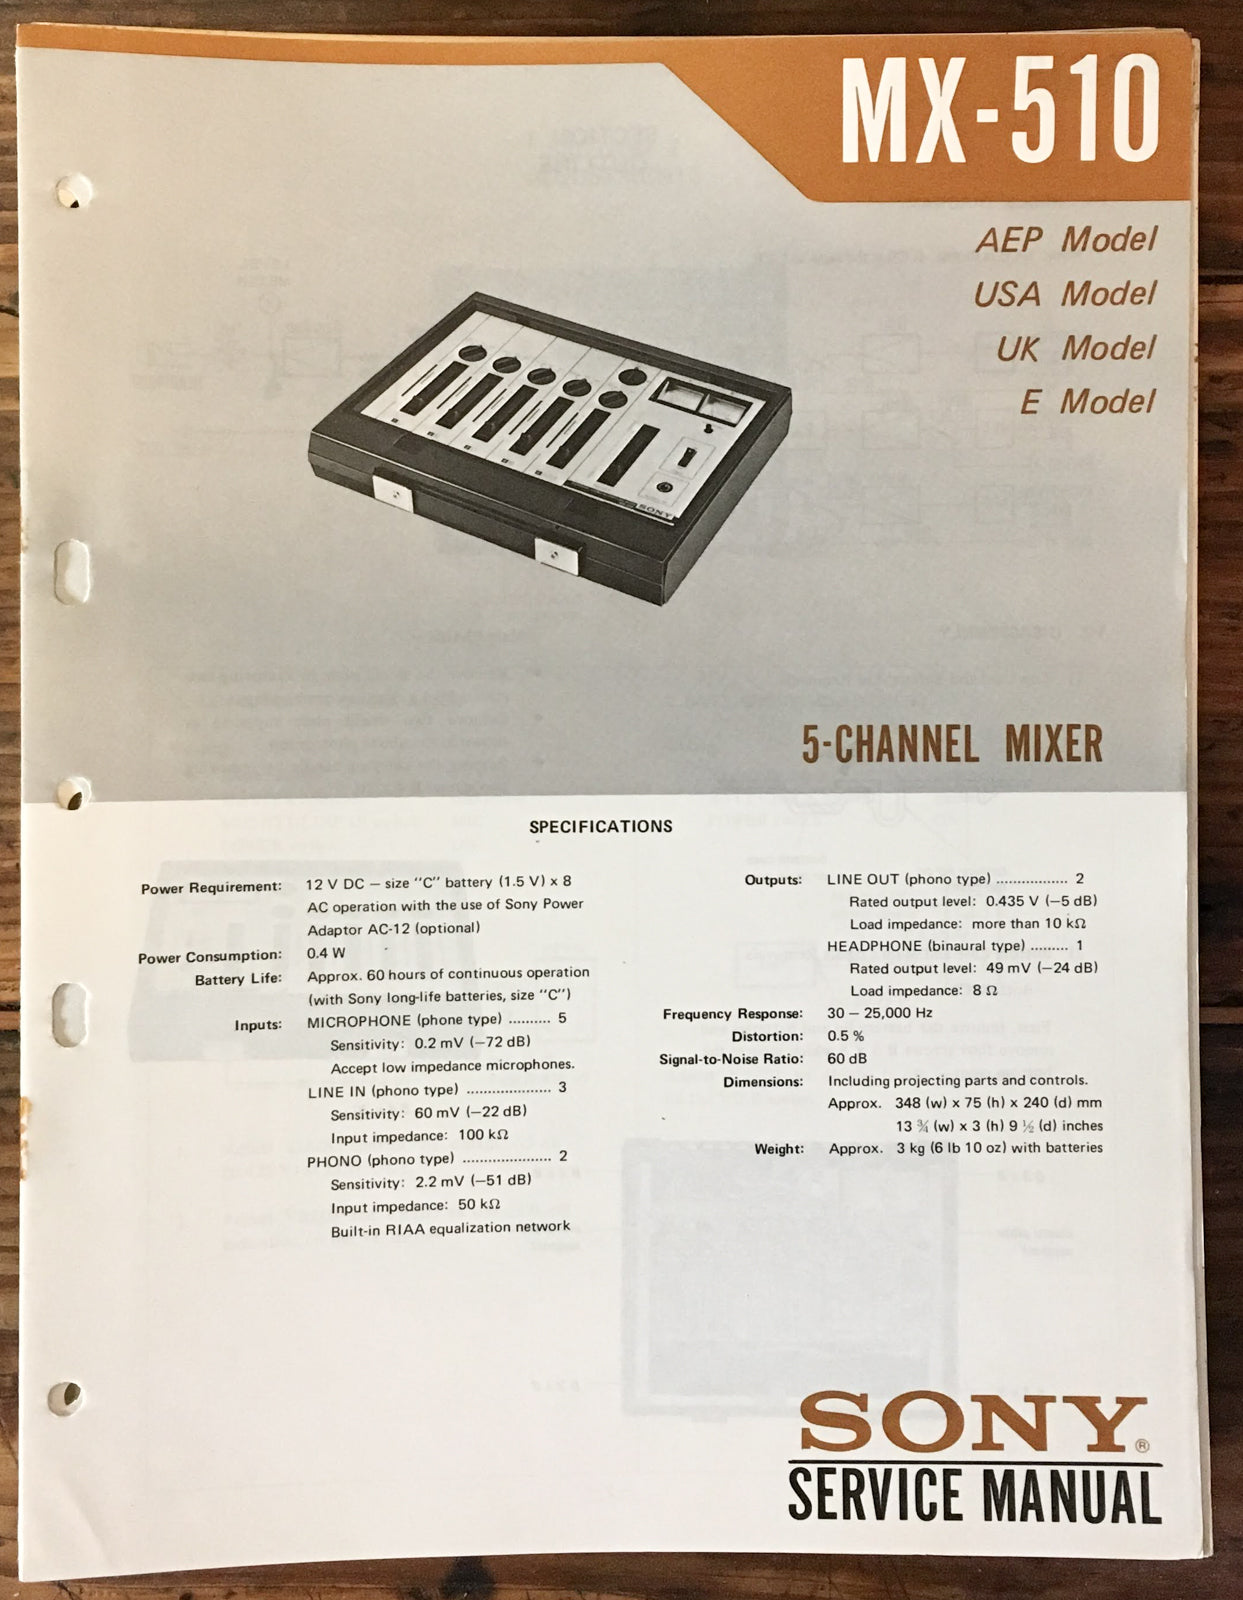 Sony MX-510 Mixer Service Manual *Original*